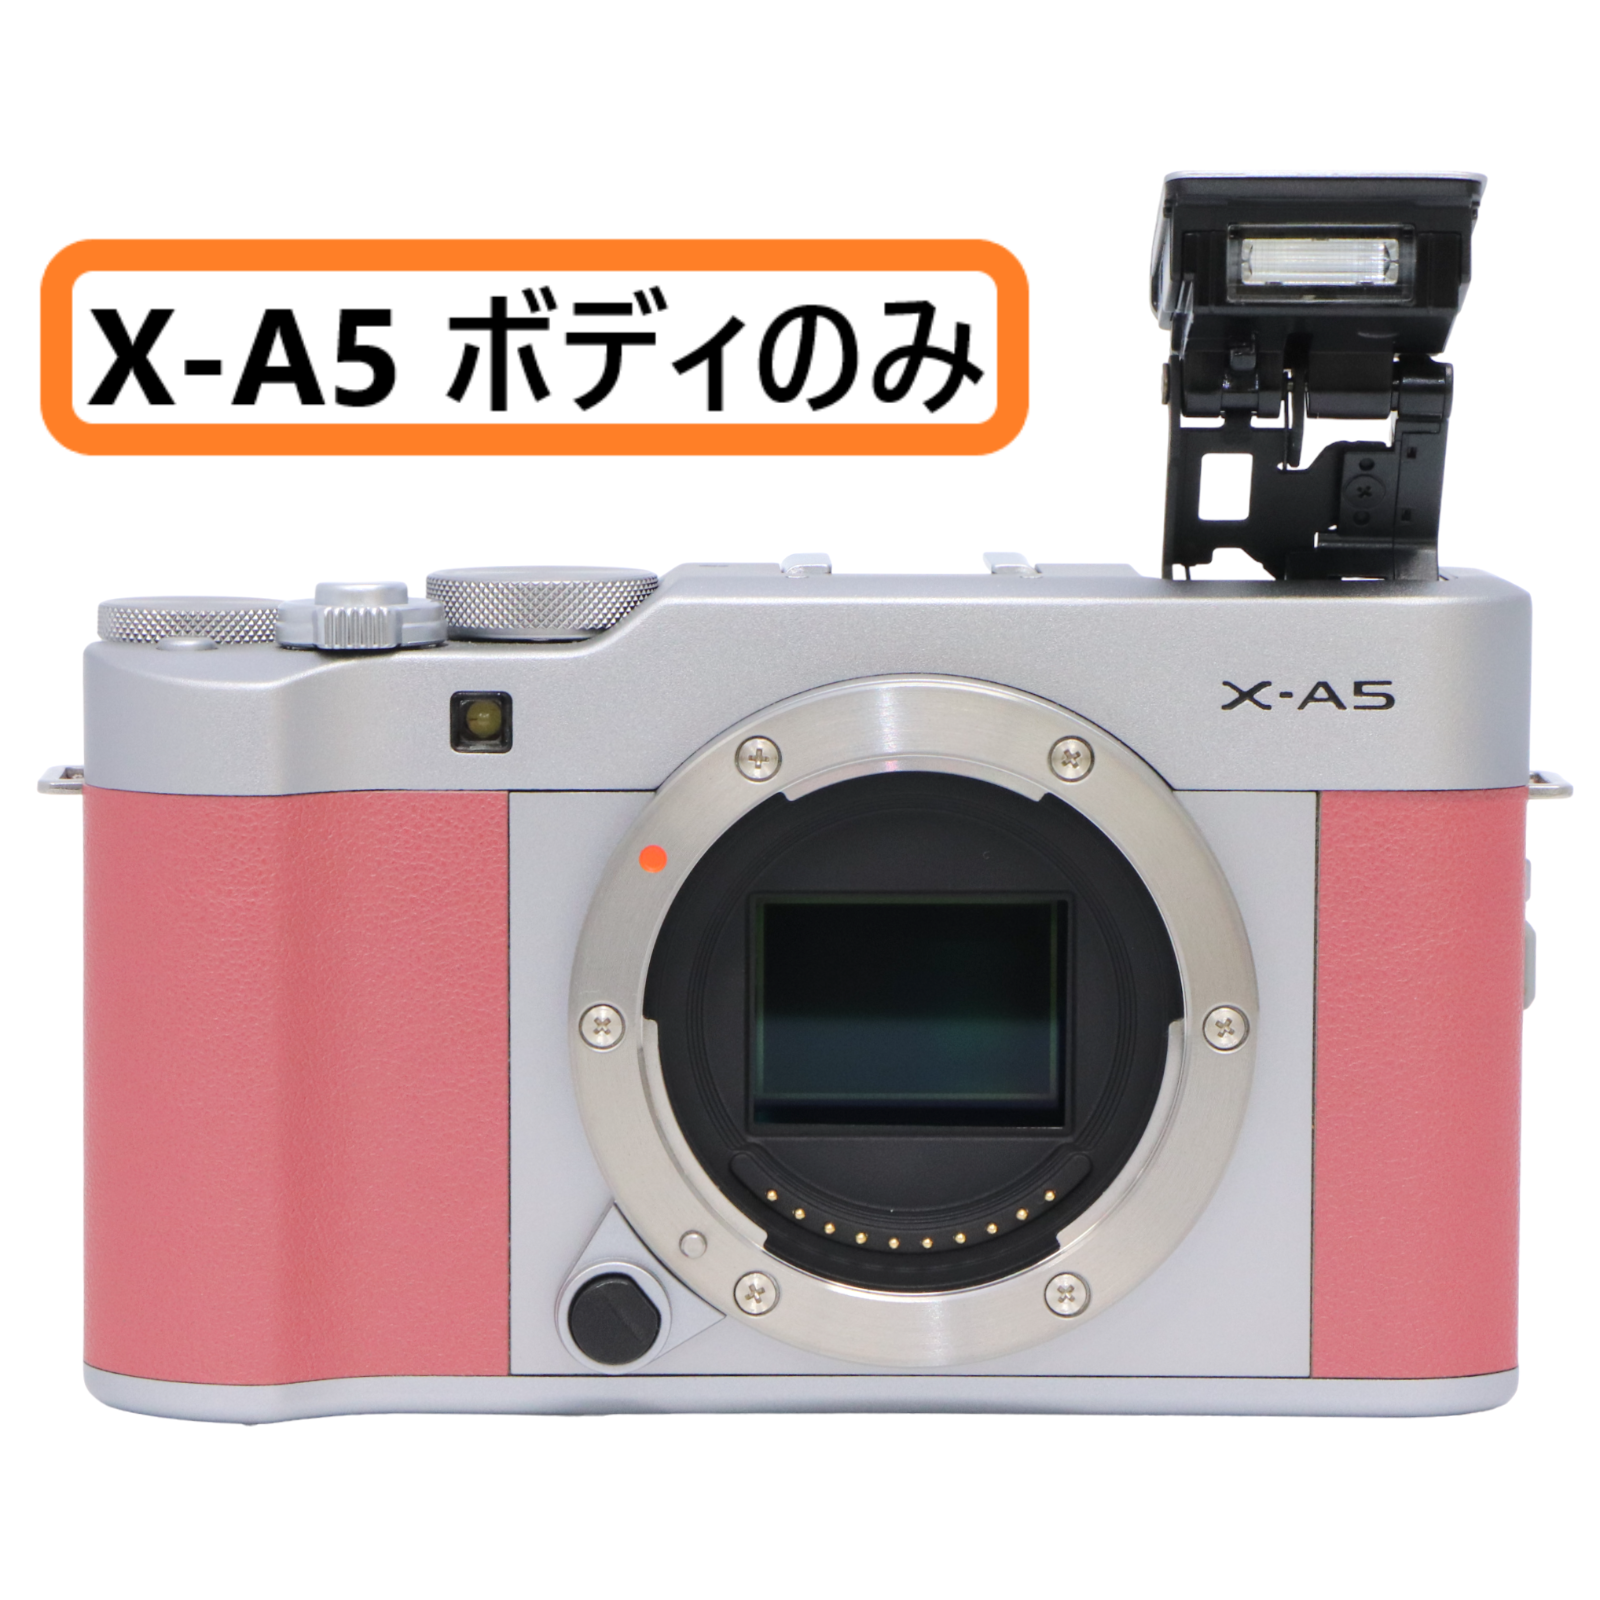 FUJI FILM デジタルカメラ X-A3 レンズキット PINK